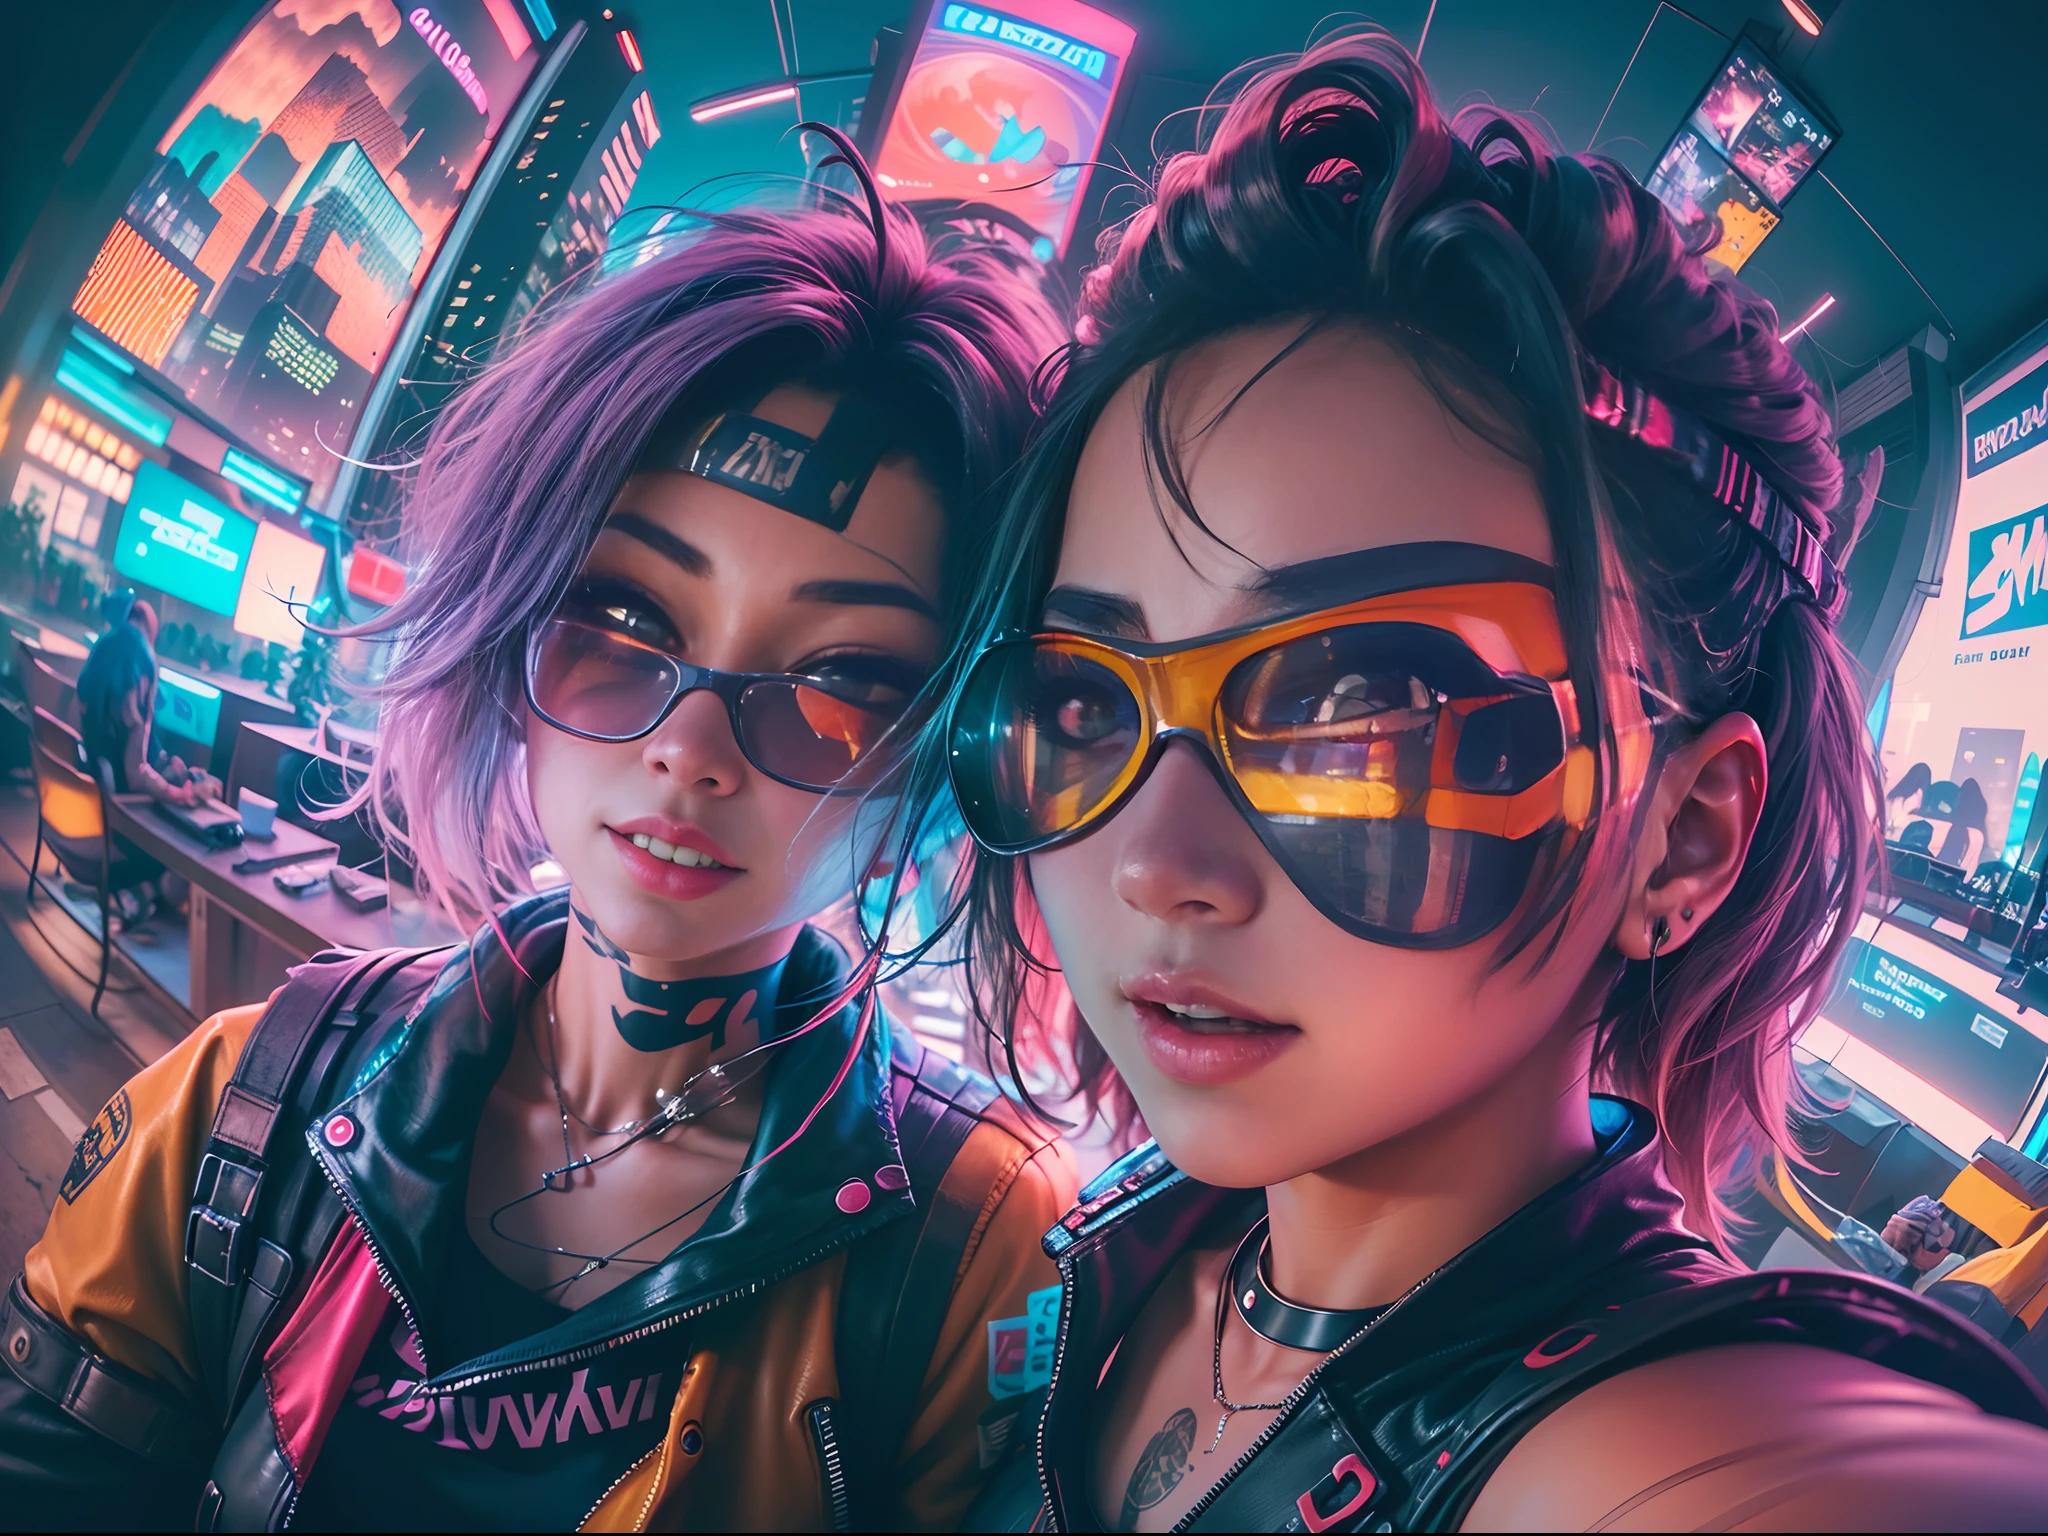 ((2 chicas cyberpunk vistiendo un colorido traje pop estilo Harajuku)), ((((lentes de ojo de pez)))), tiro de vaquero, viento, pelo despeinado, ((paisaje urbano ciberpunk 2077)), (Estética y atmósfera cyberpunk:1.3), colores brillantes, sonriente, ((iluminación cinematográfica))